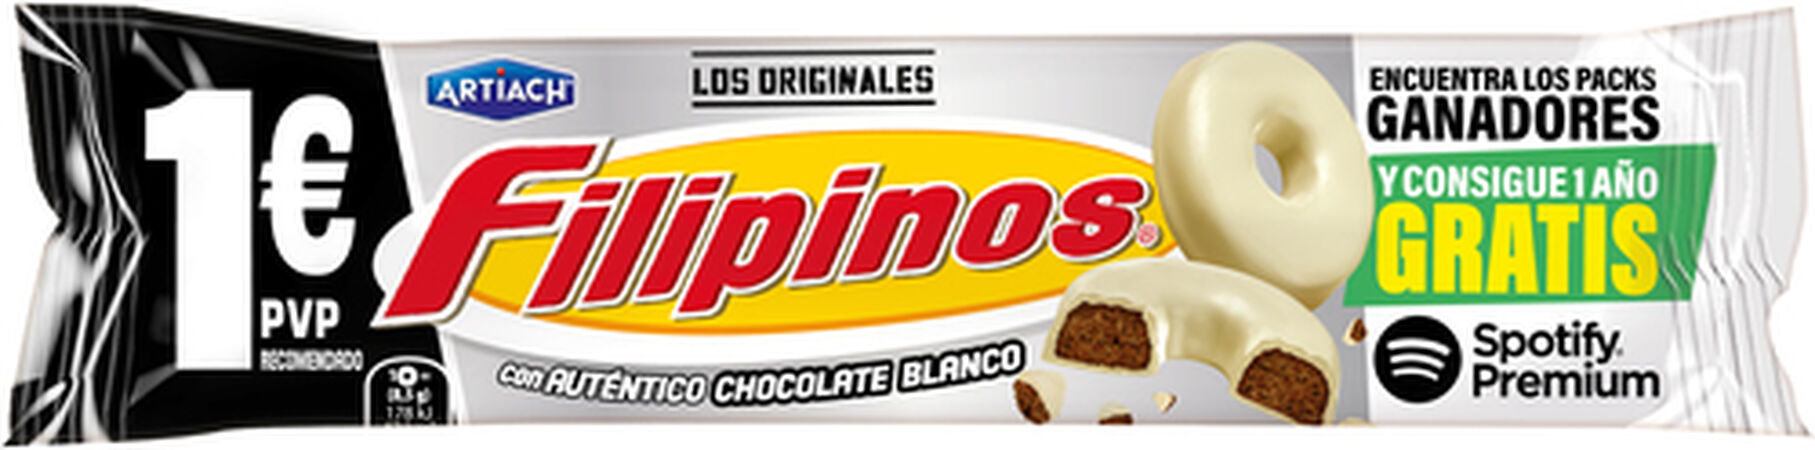 Galletas Filipinos 100g chocolate blanco